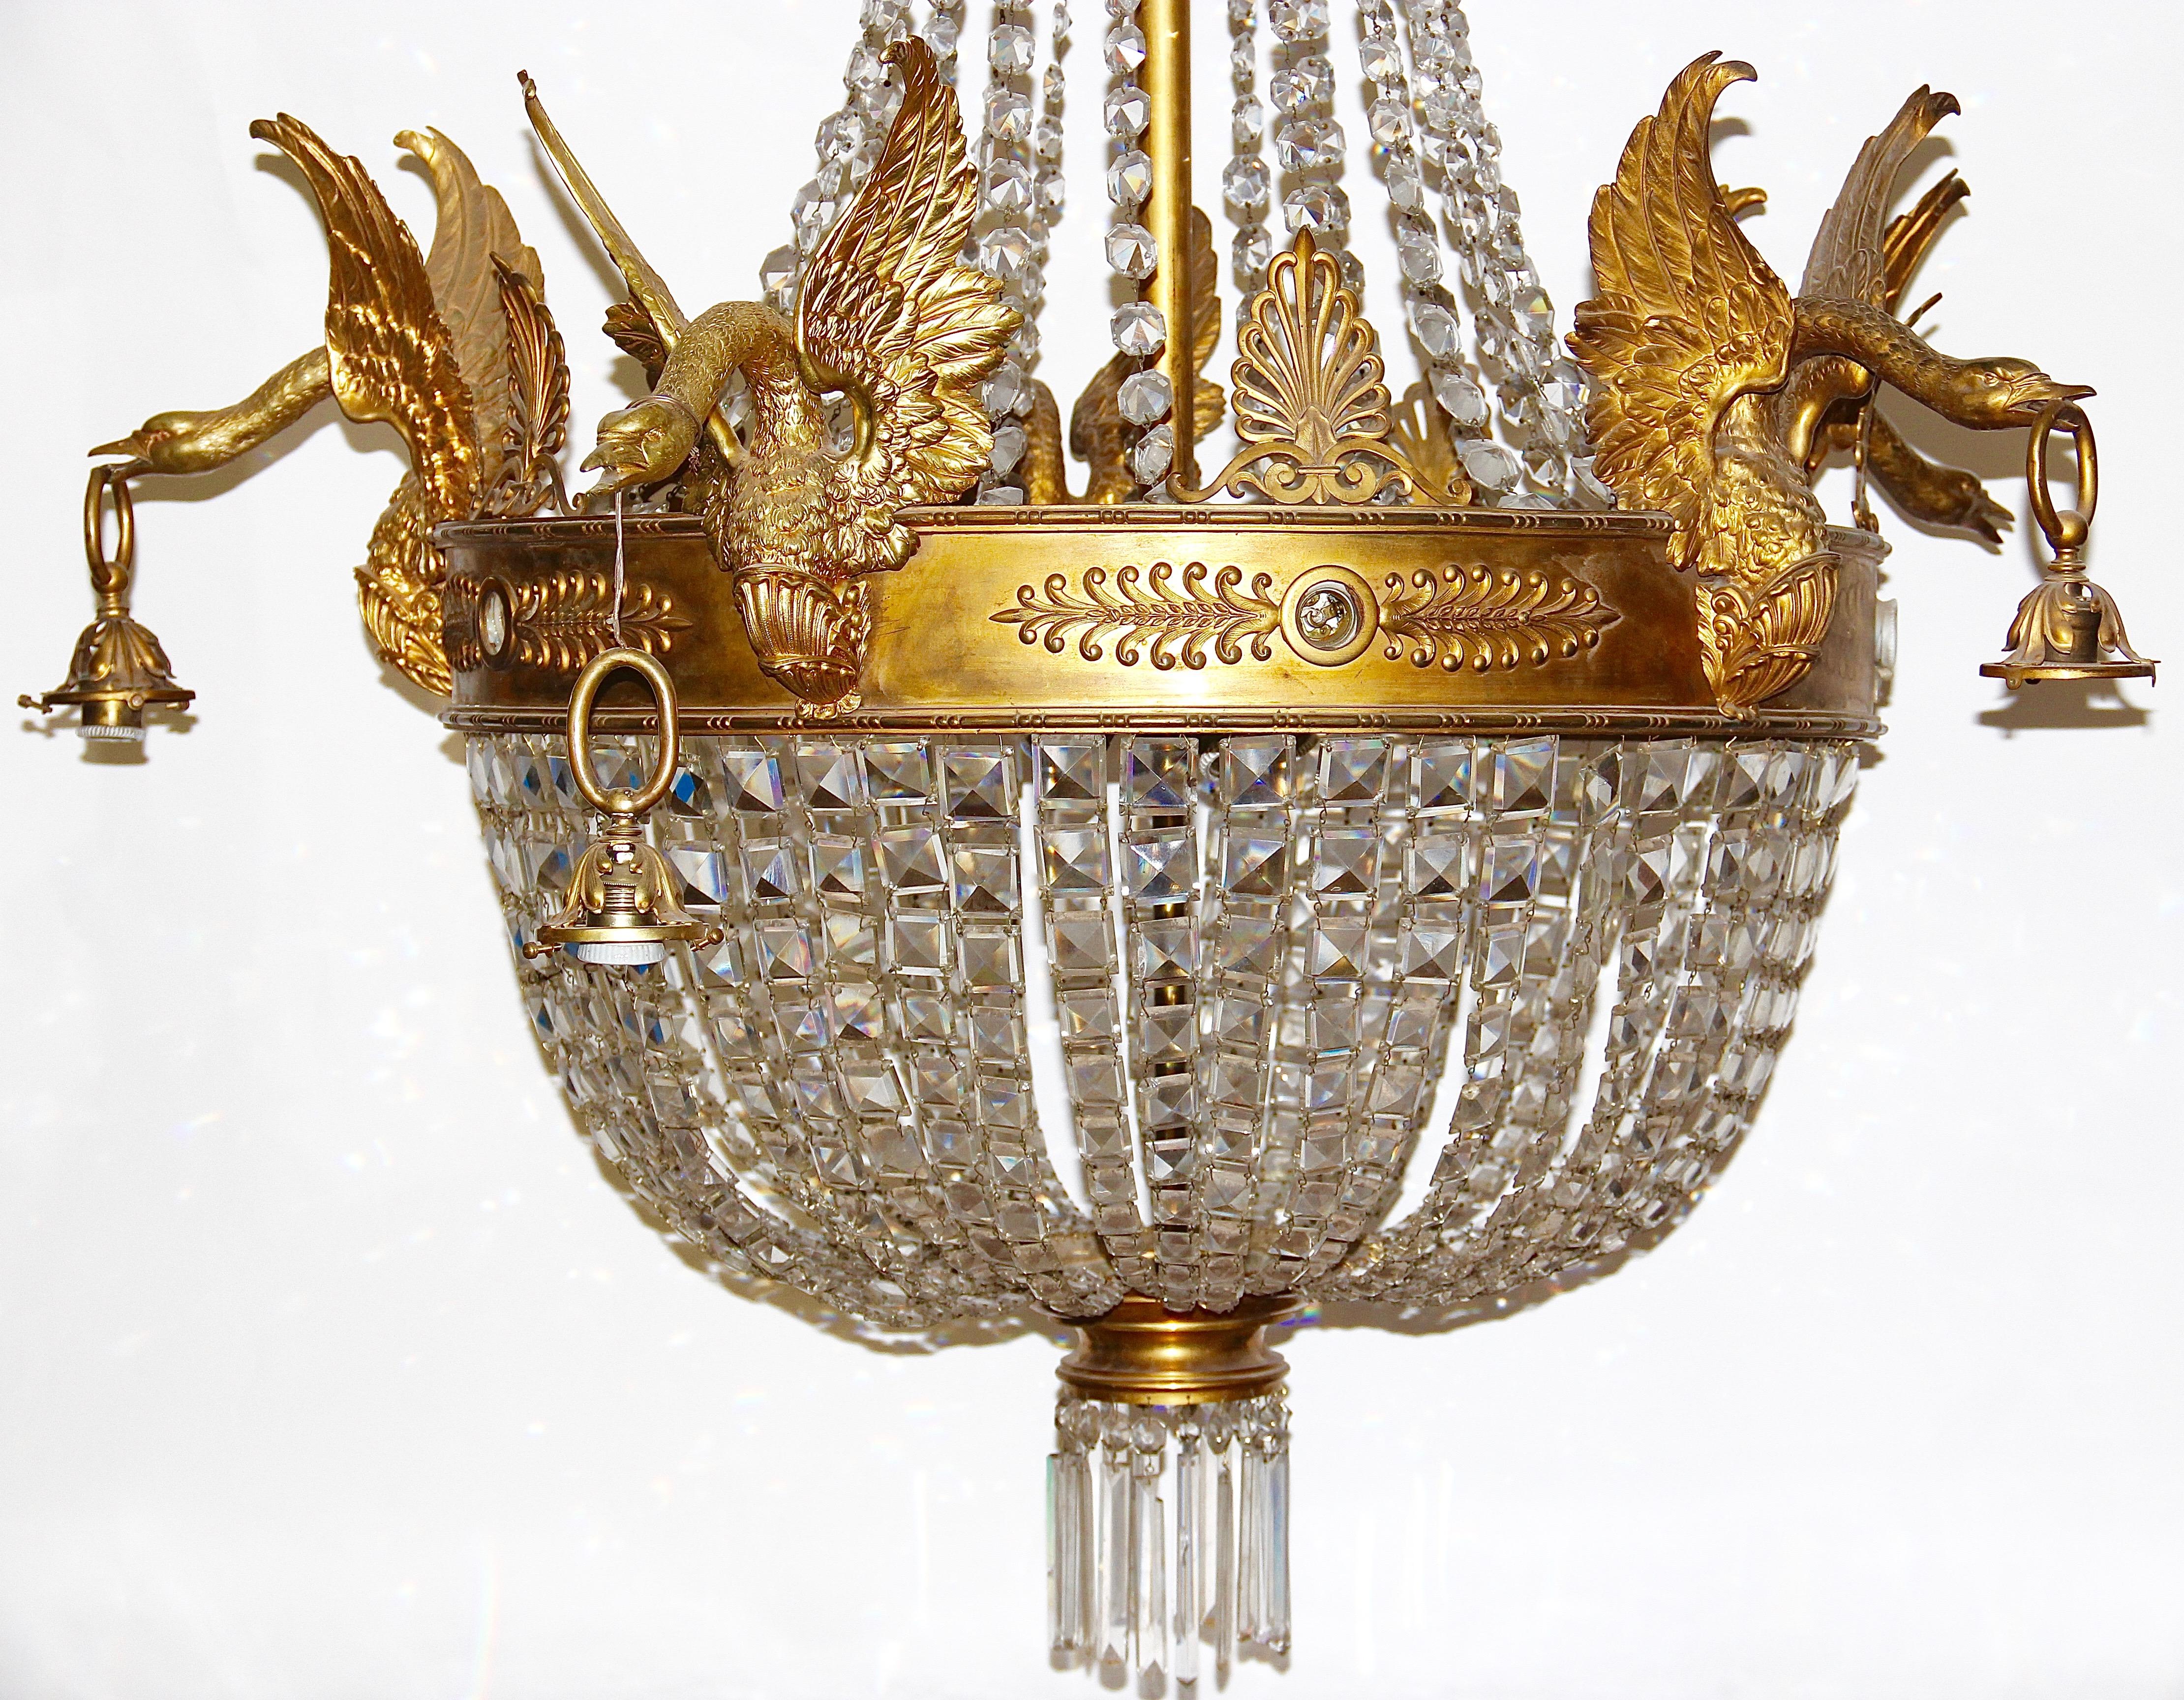 Lustre Empire extrêmement décoratif, lourd et de haute qualité,
19ème siècle.

Aucune réplique. Le personnel est composé de cinq magnifiques cygnes en bronze doré au feu.

Ce lustre impressionne par son caractère unique.
Le cygne est l'animal